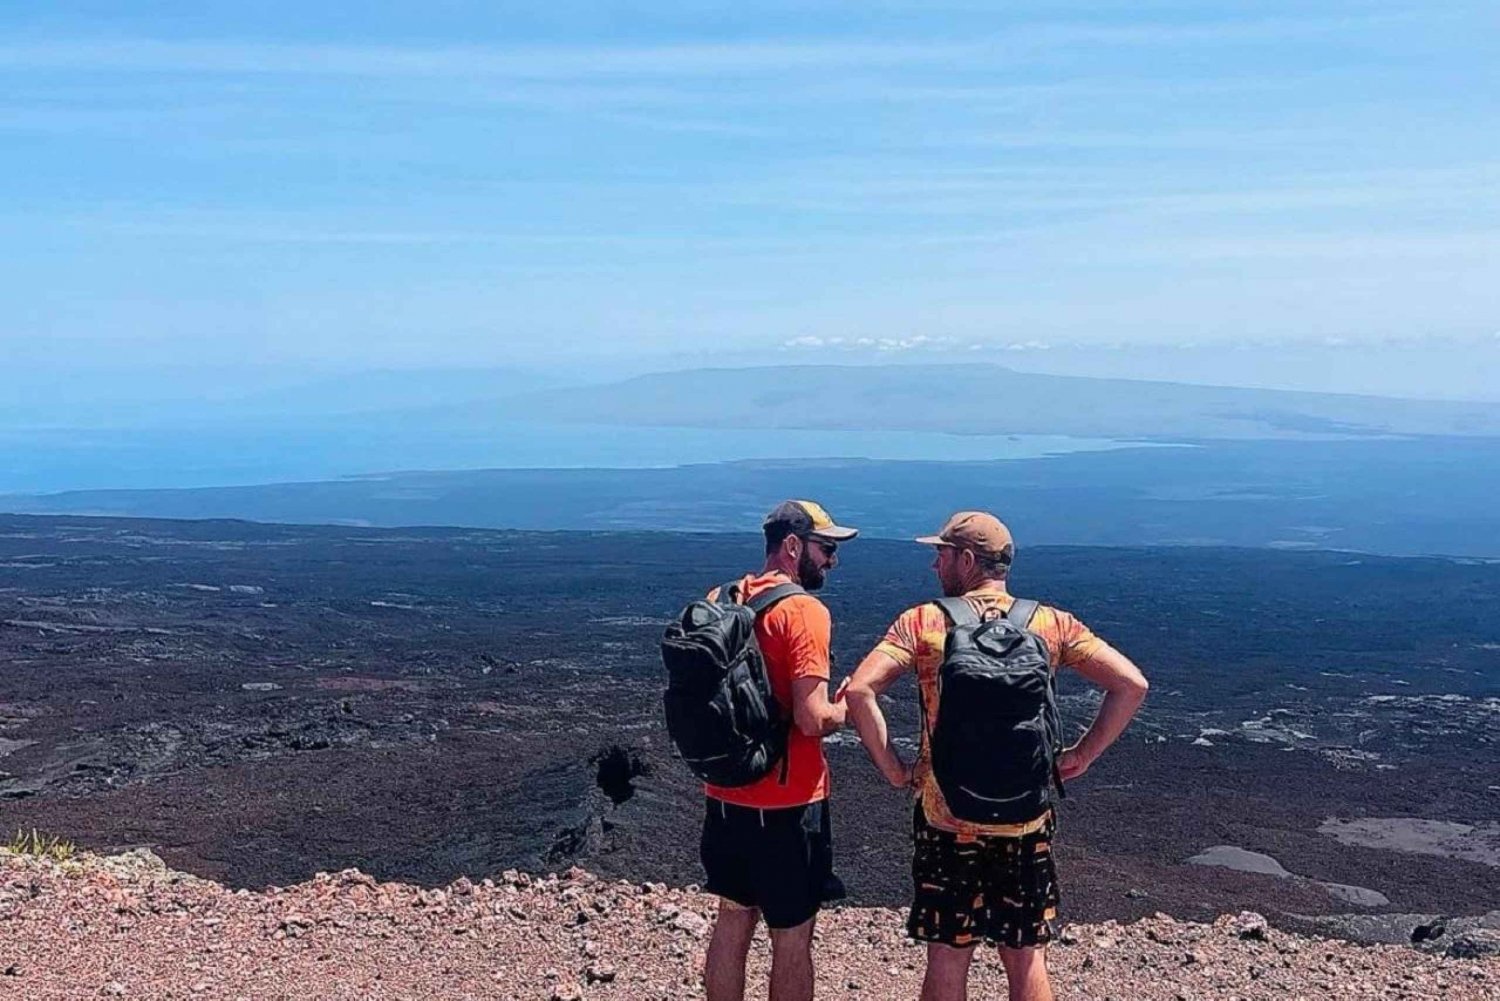 Erobre Sierra Negra-vulkanen! Ekspedisjon til lavafeltene